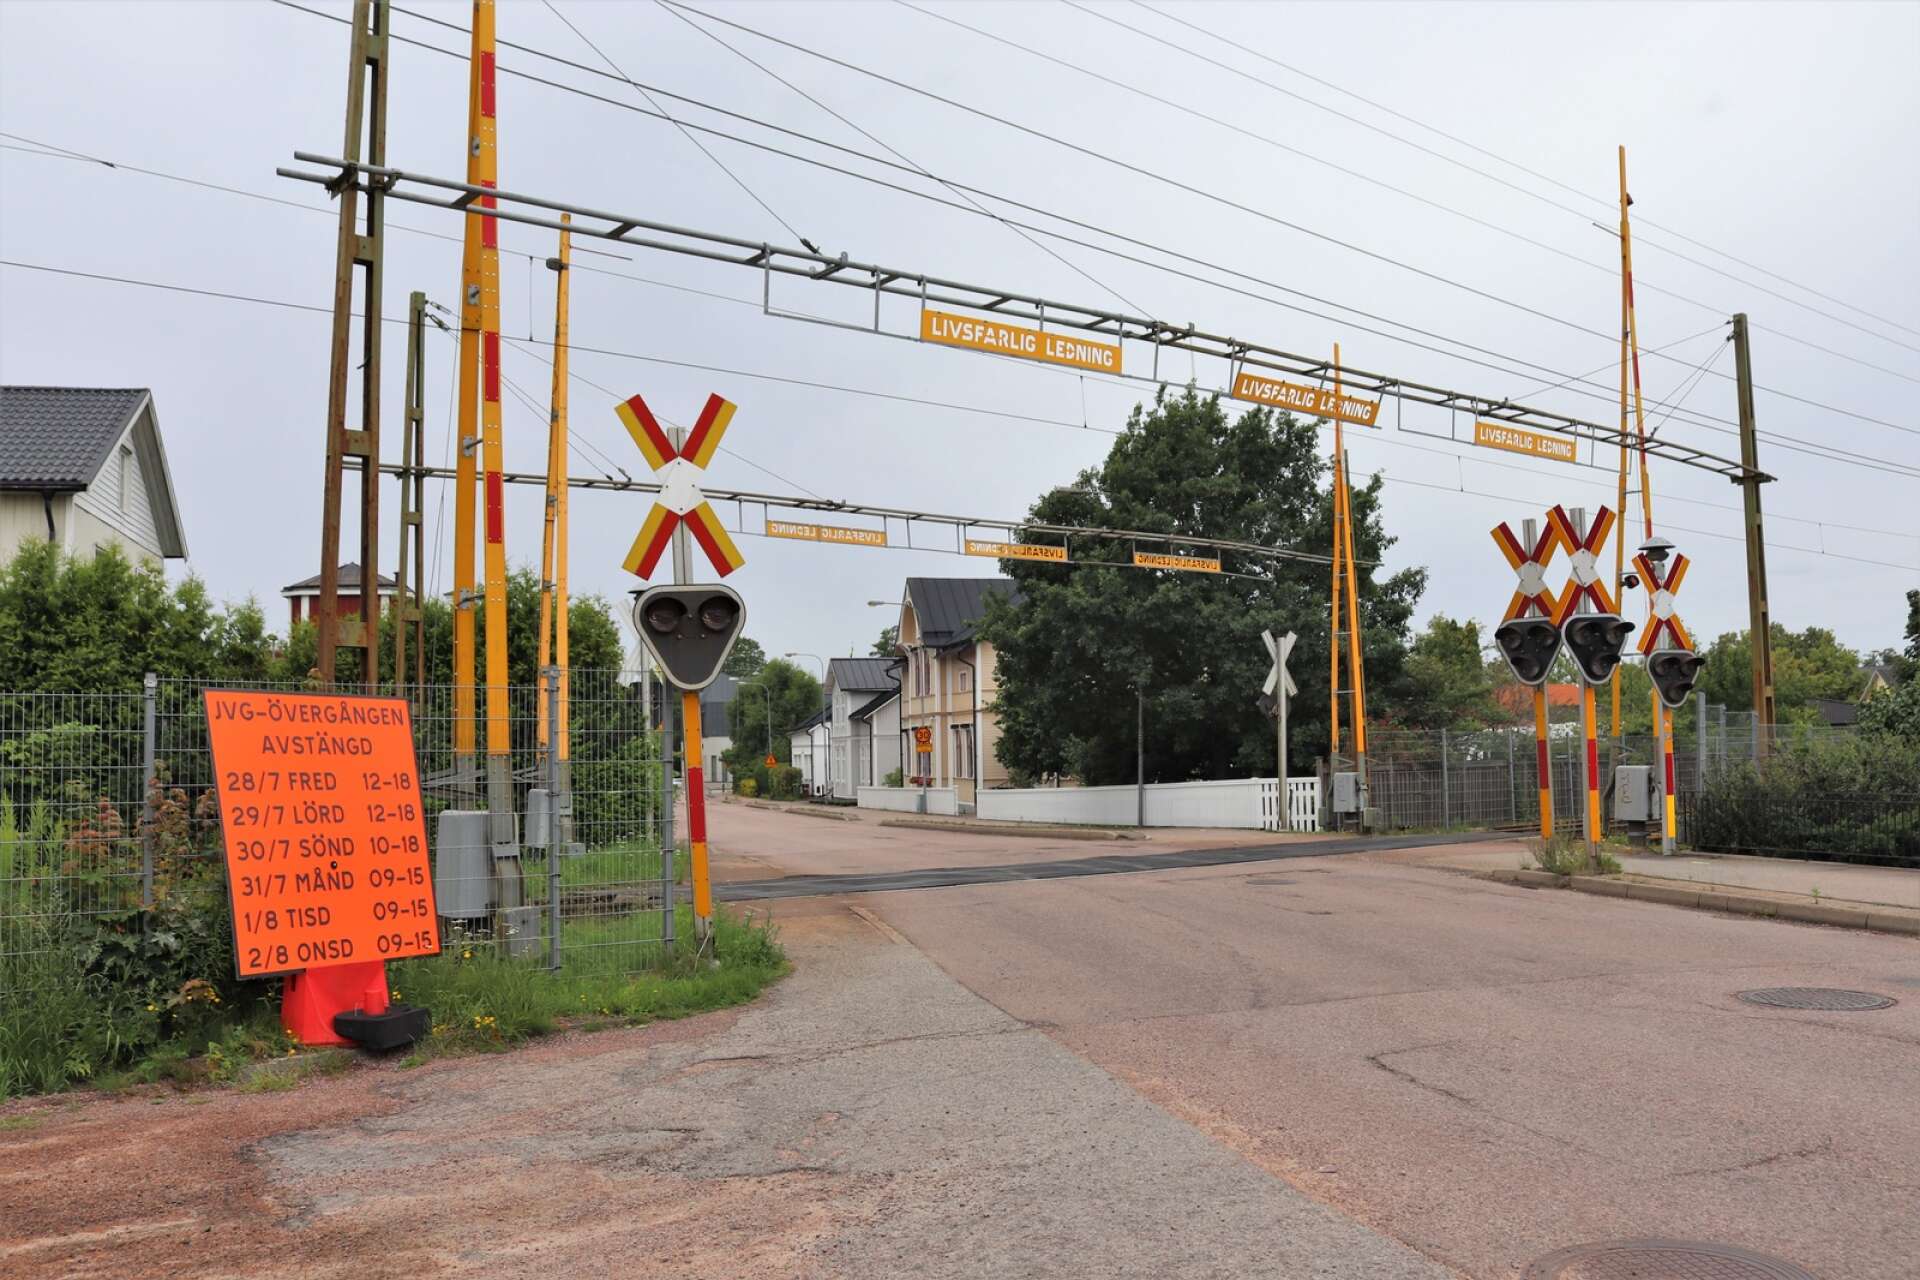 Järnvägsövergångar i Kristinehamn stängdes av under nästan en vecka i somras Anledningen var att spåren skulle bytas. Bilden är från övergången på Jakobsbergsgatan.